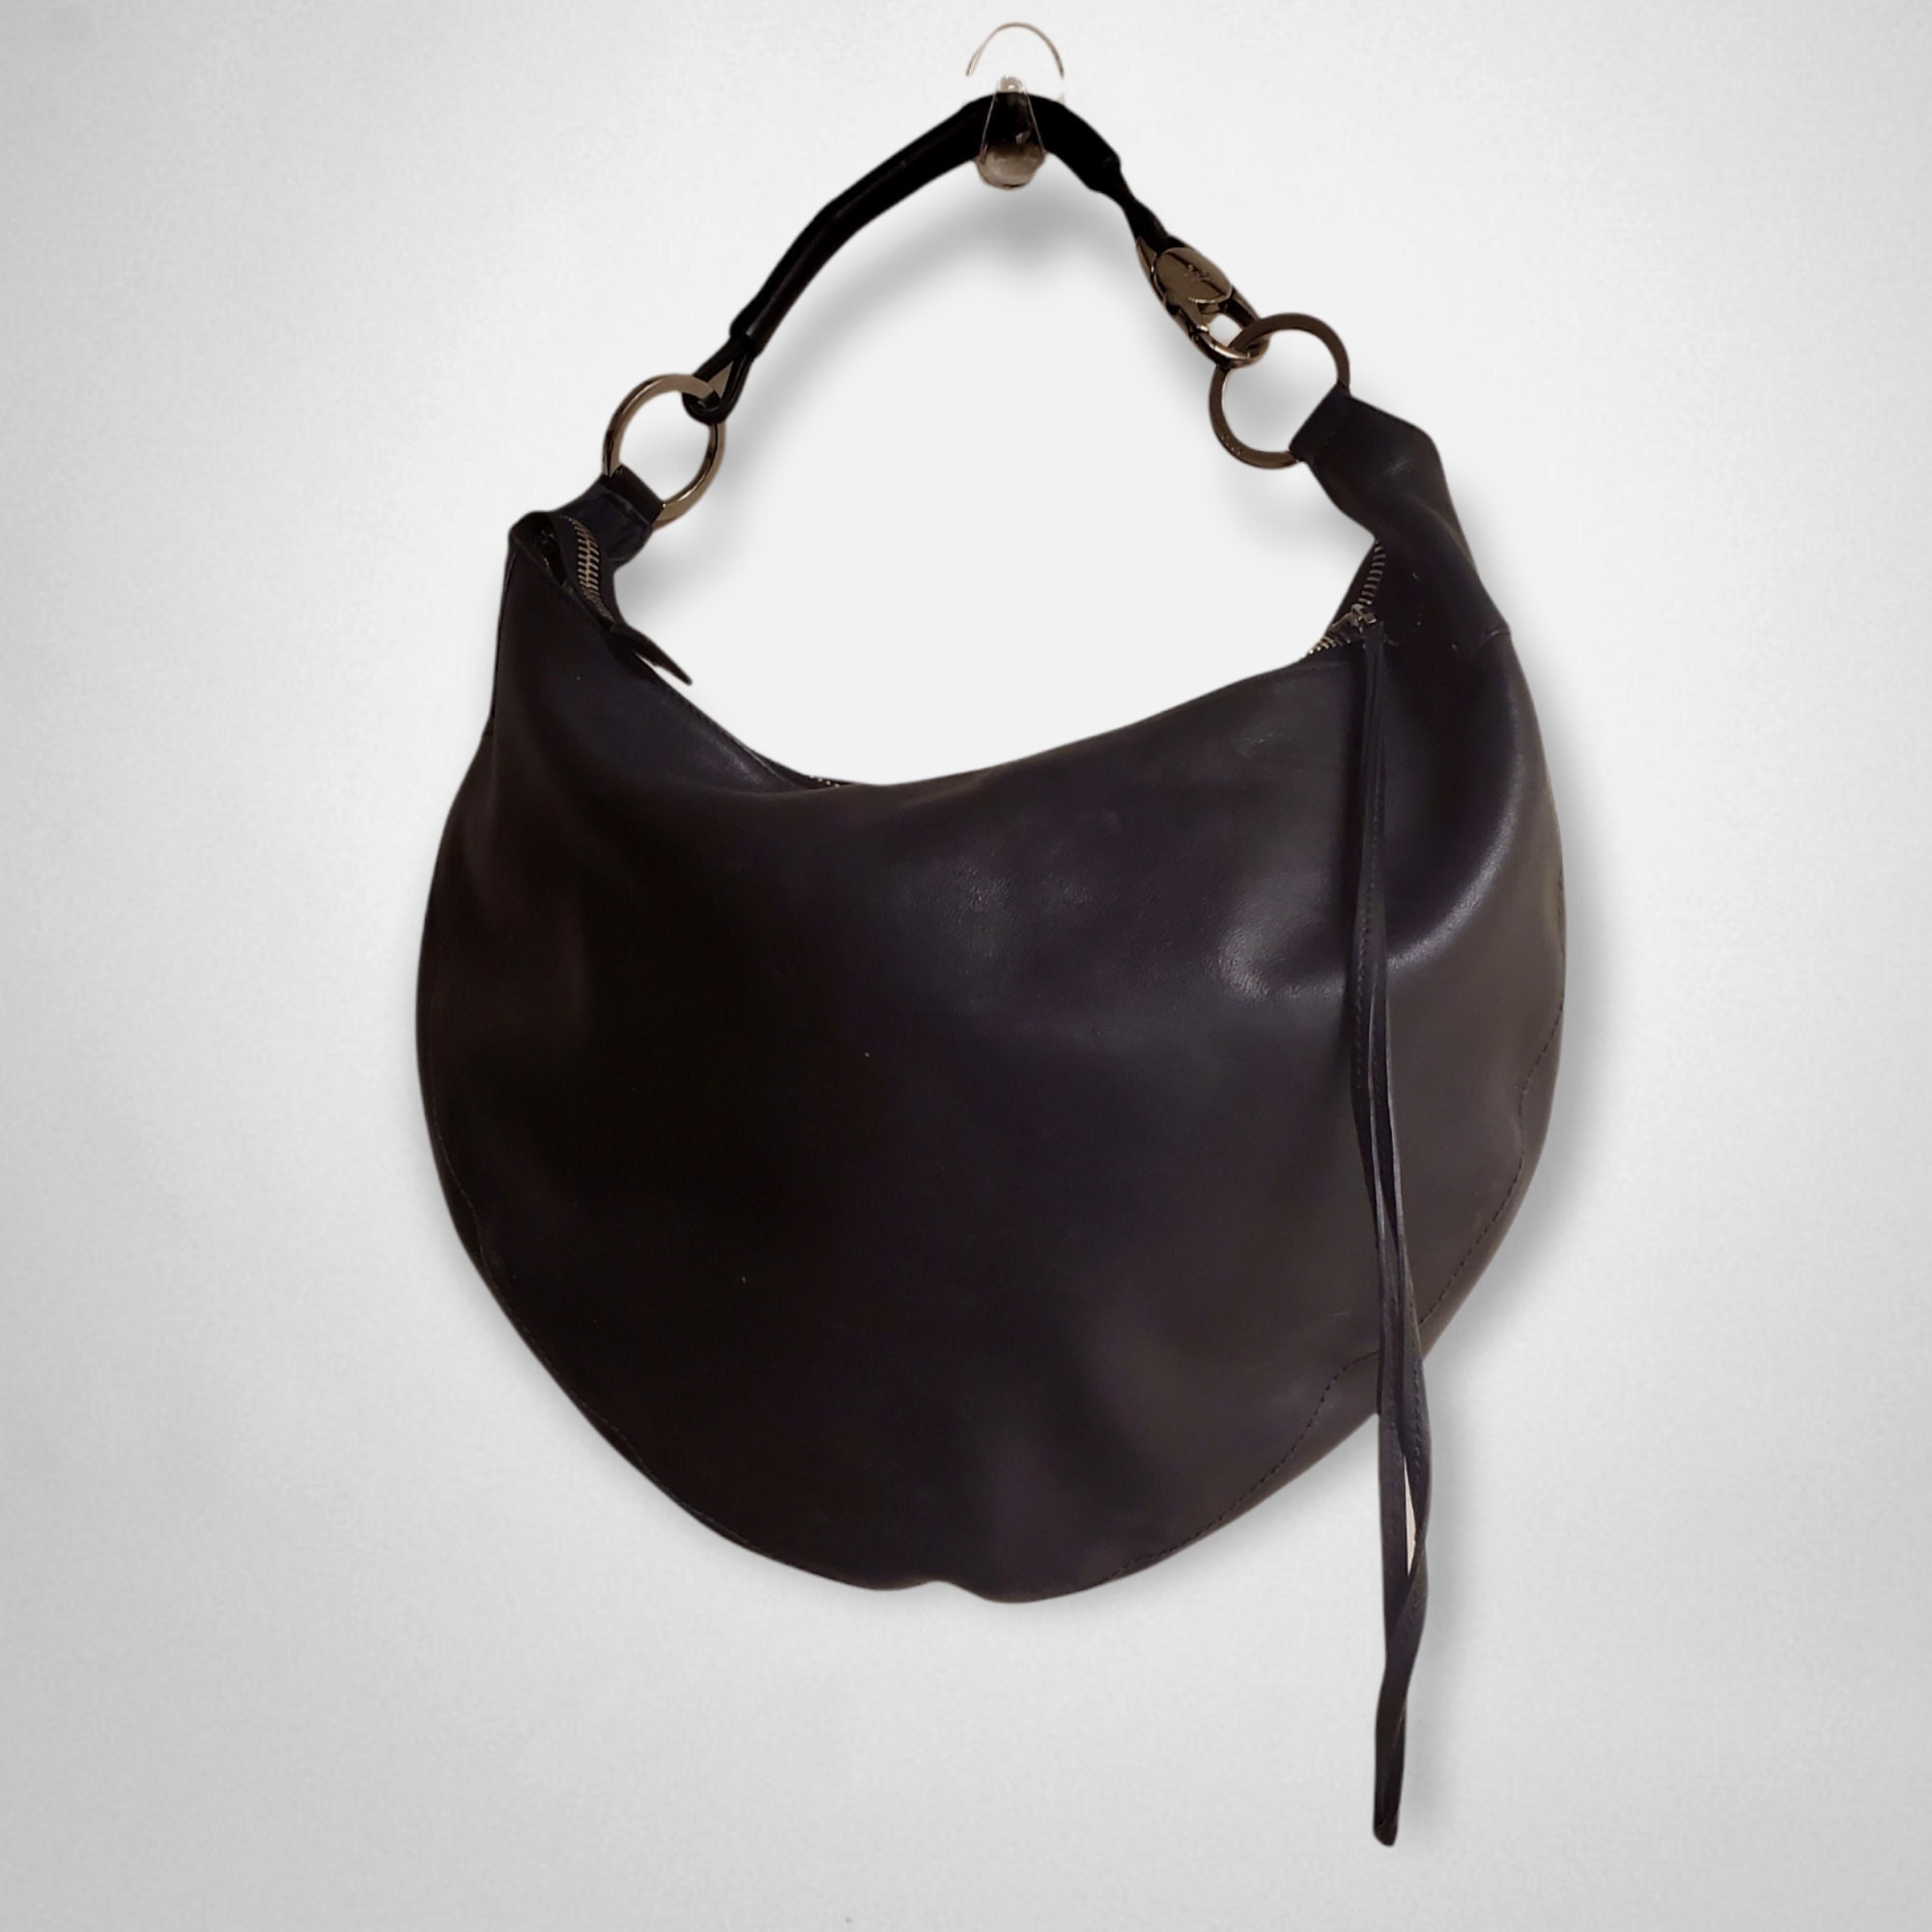 80's 'Half Moon' Flap Bag, Authentic & Vintage